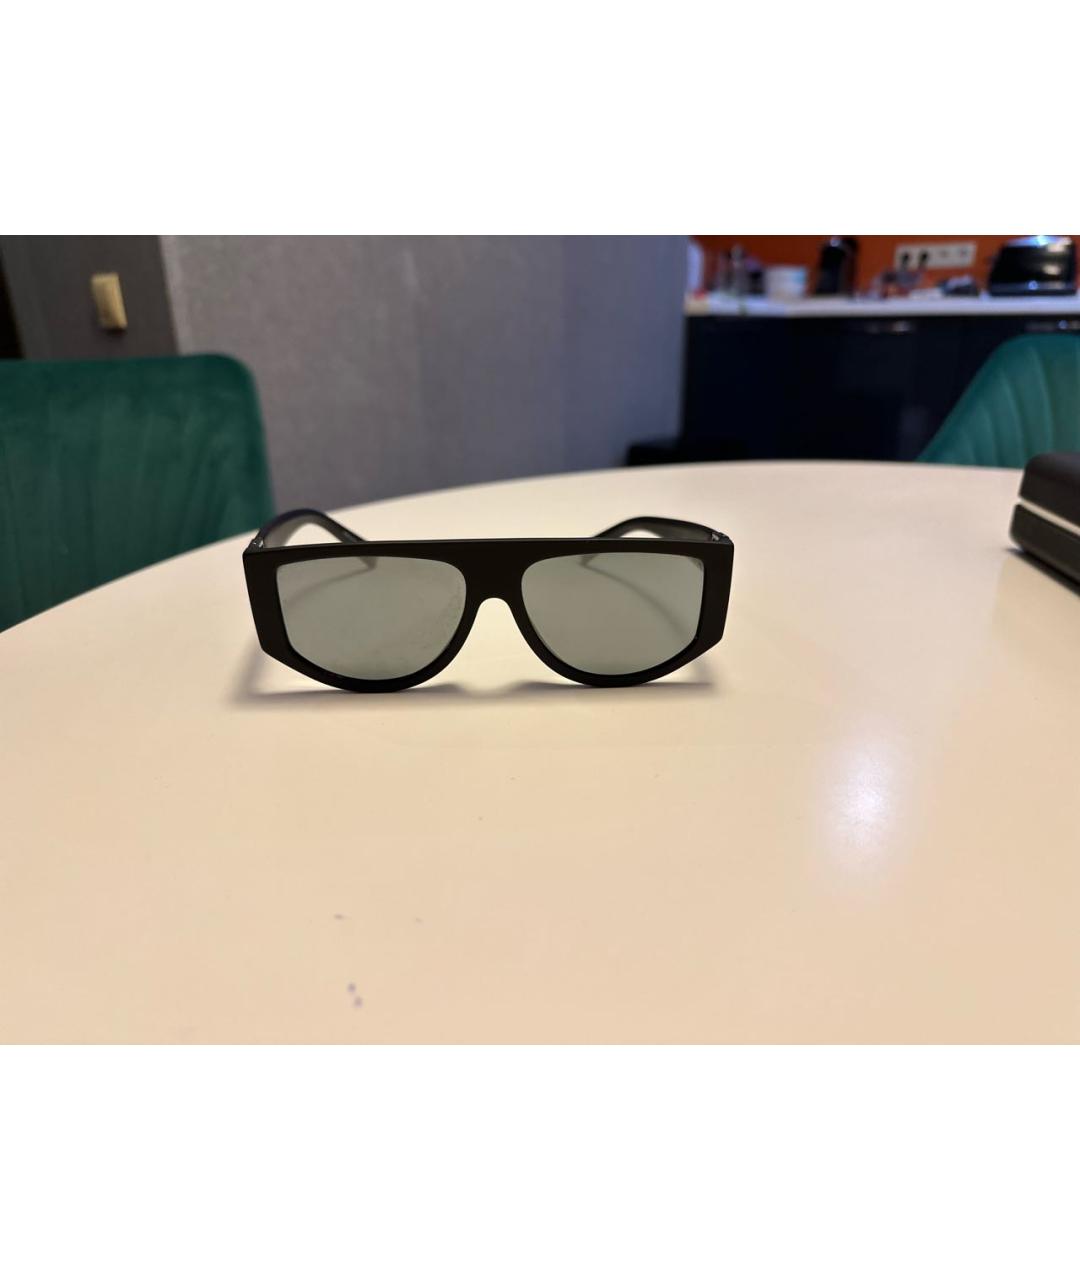 GIVENCHY Черные пластиковые солнцезащитные очки, фото 2